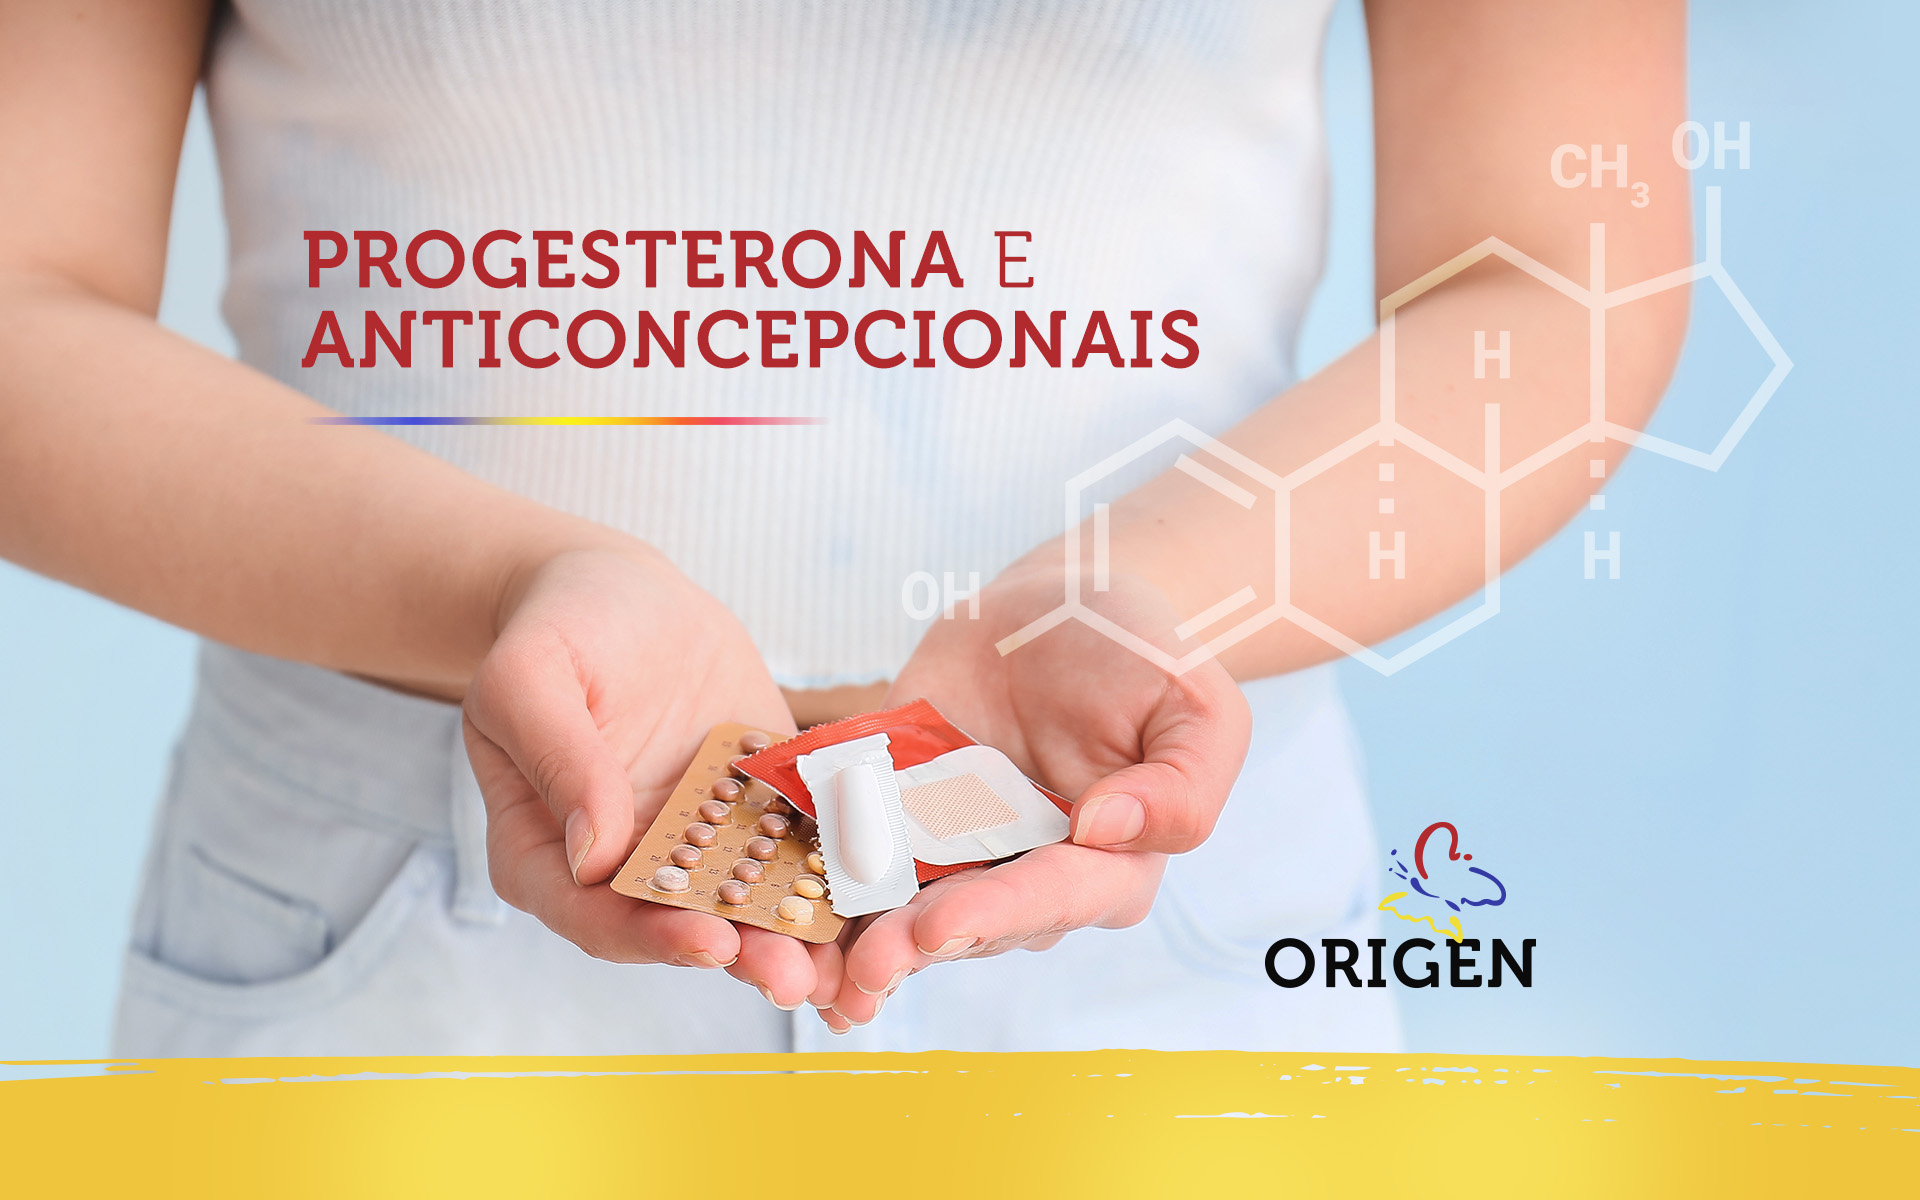 Progesterona e anticoncepcionais